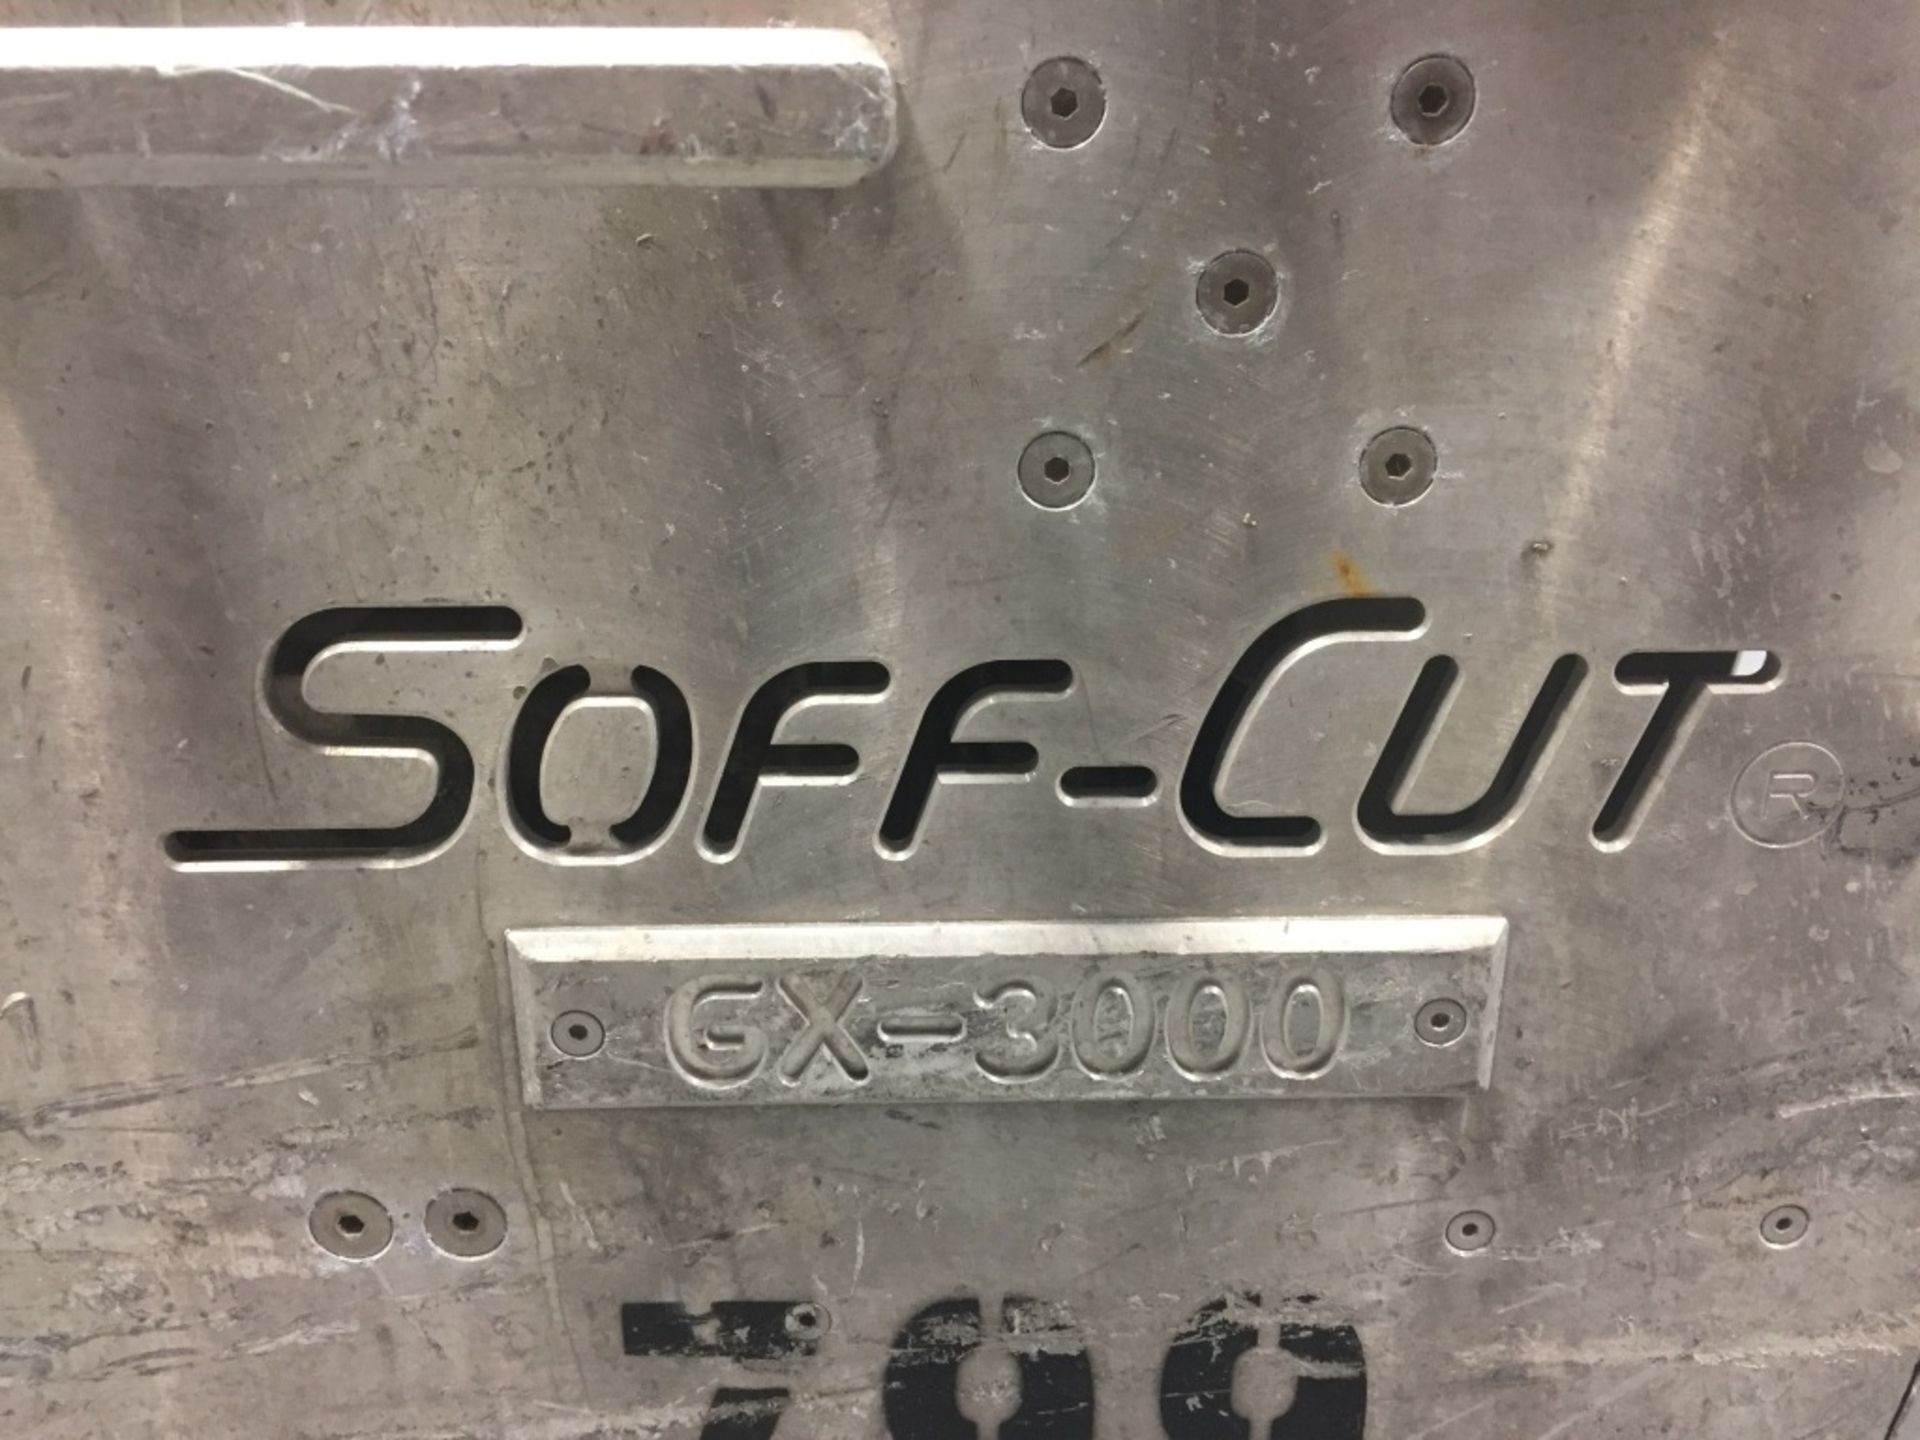 Soff-Cut GX-3000 Concrete Saw, 2312hrs, Kohler Command Pro - Image 7 of 11